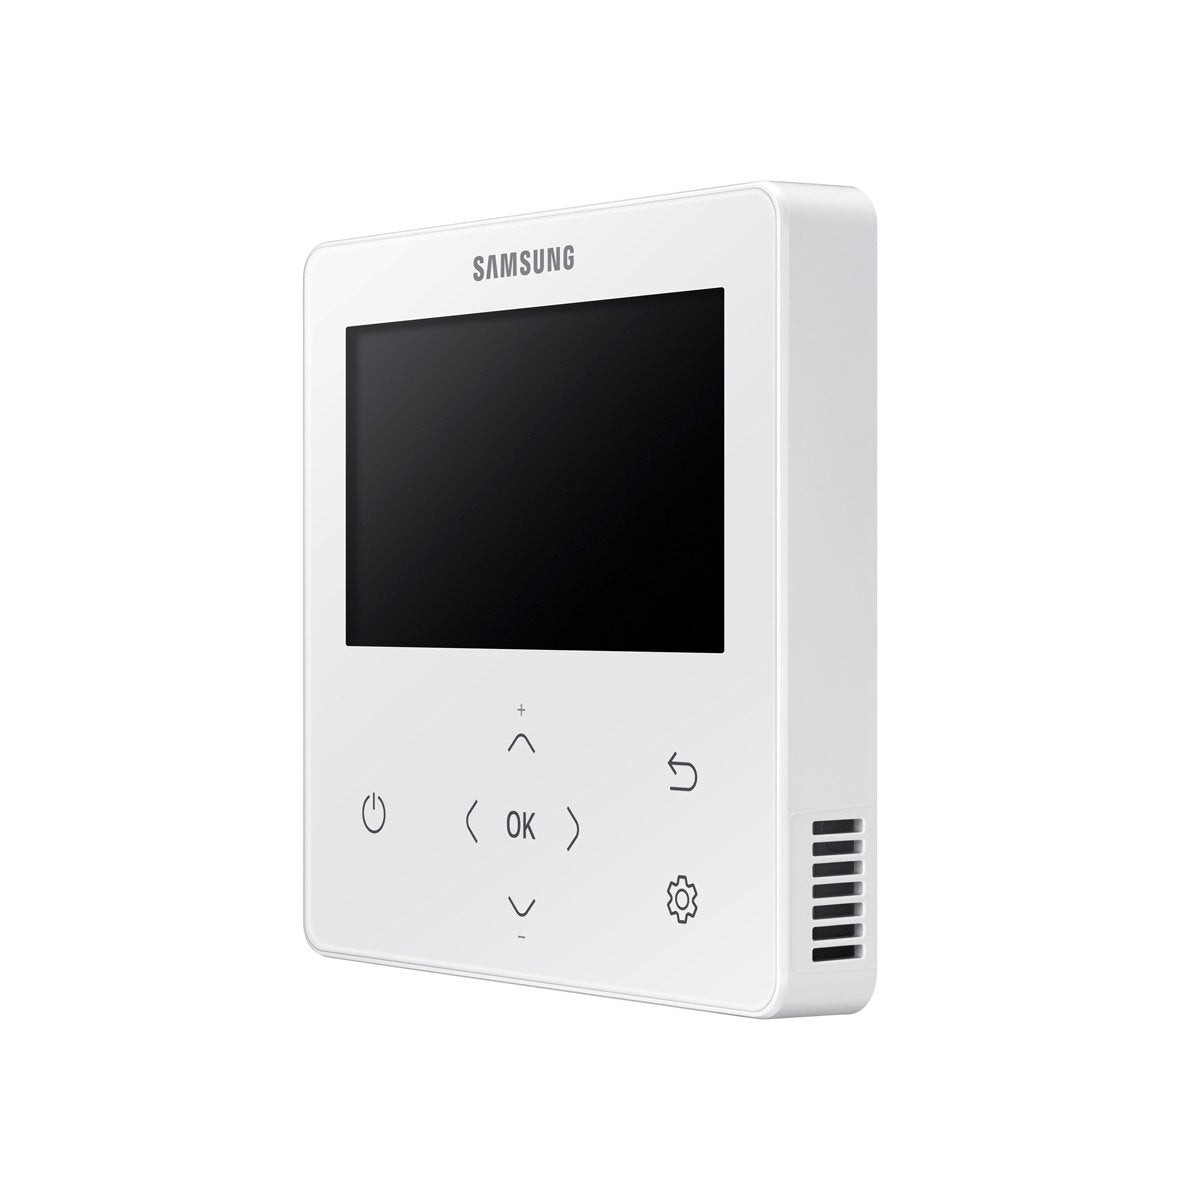 Samsung air conditioner Cassette Windfree 4 ways trial split 7000 + 9000 + 9000 BTU inverter A +++ outdoor unit 5.2 kW